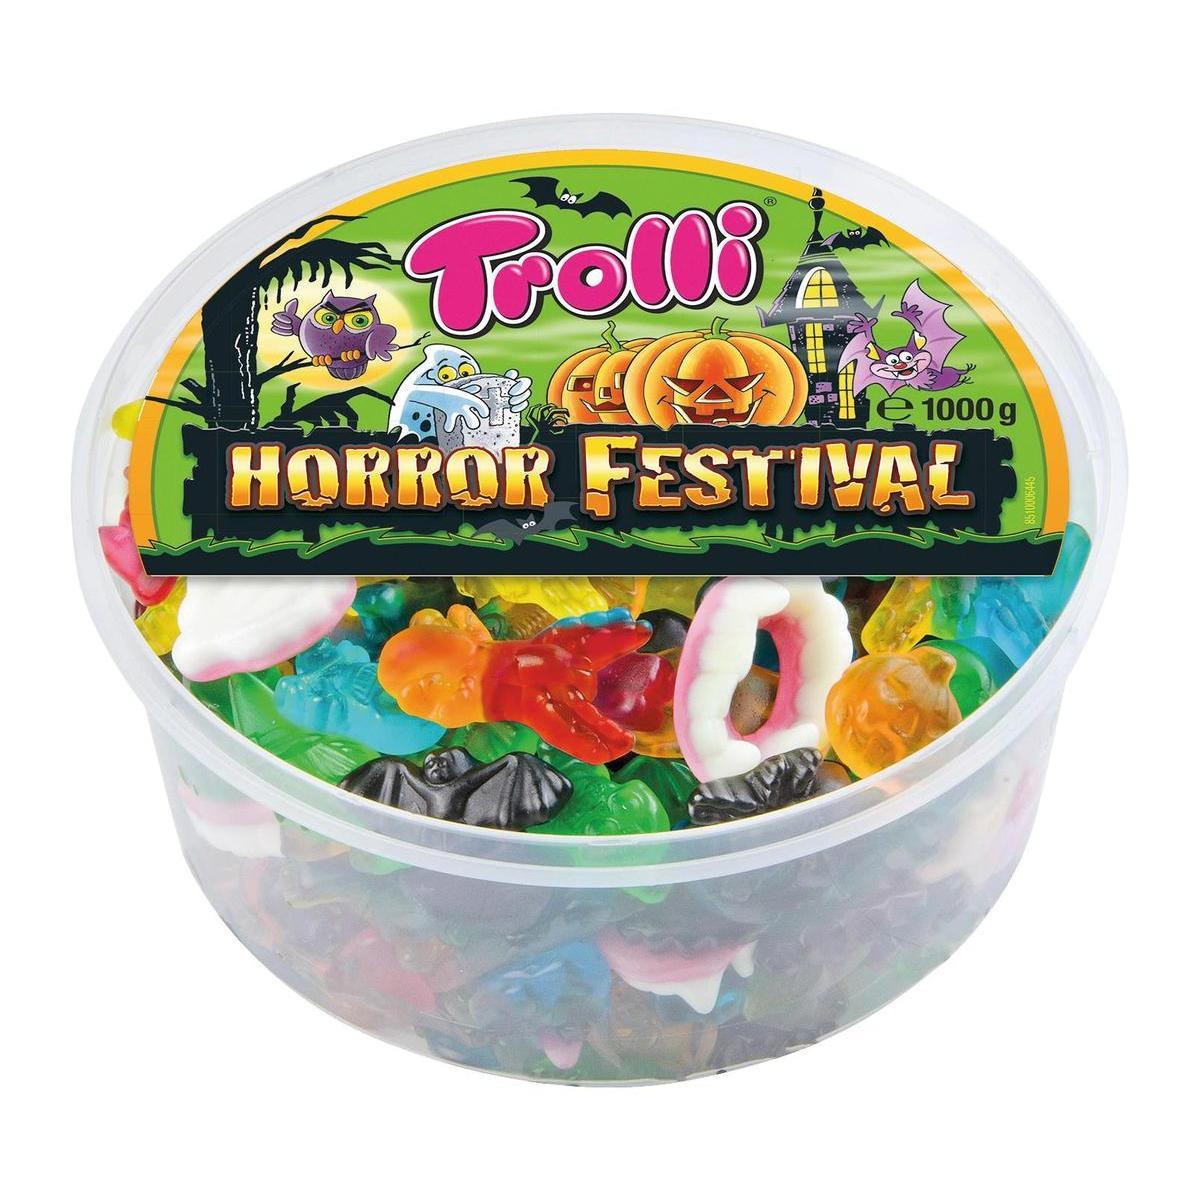 Bonbons Trolli Horror Festival - 1 kg